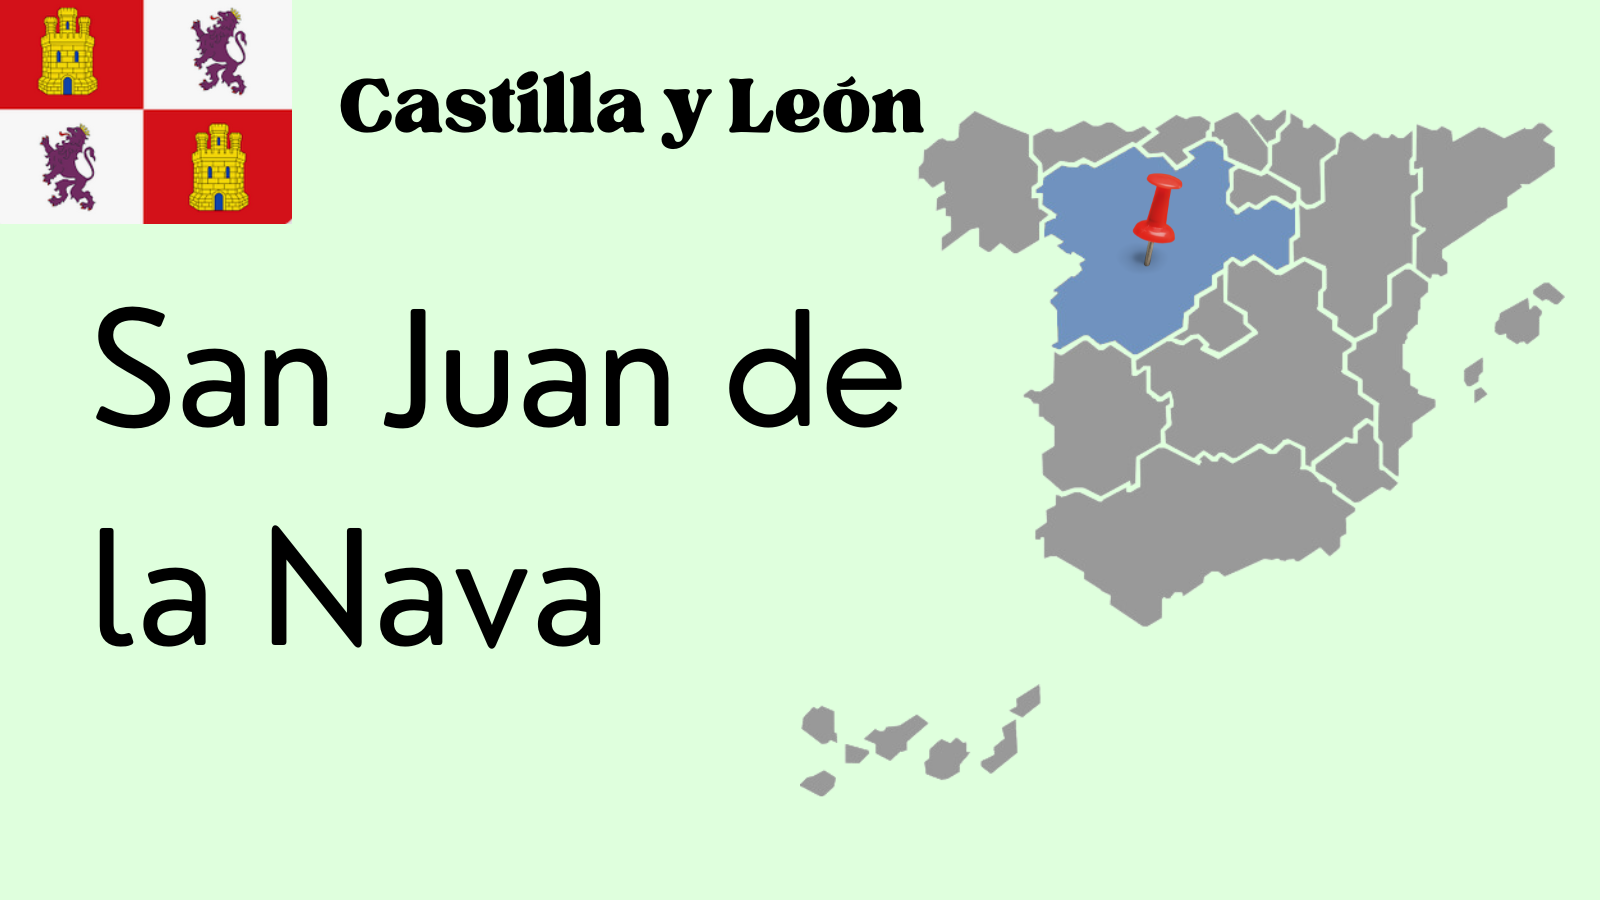 San Juan de la Nava